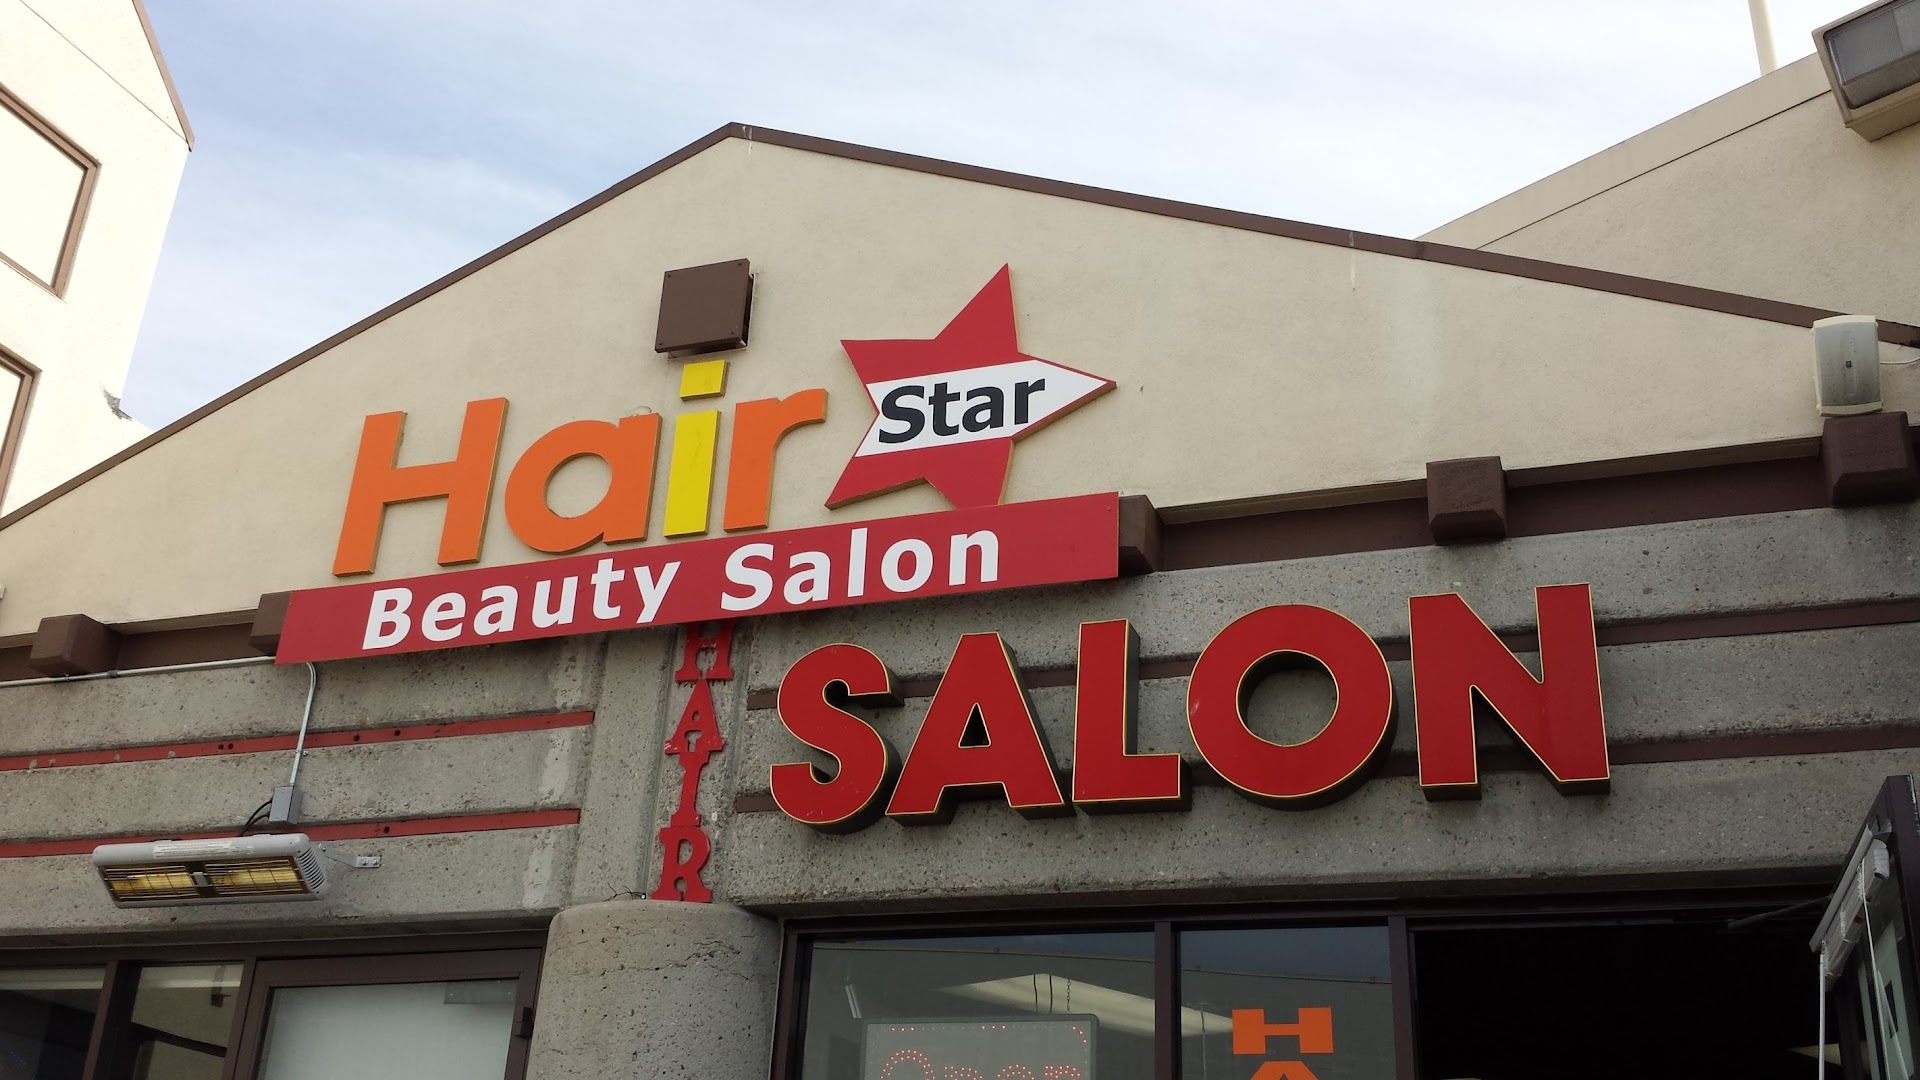 Hair Star Beauty Salon 